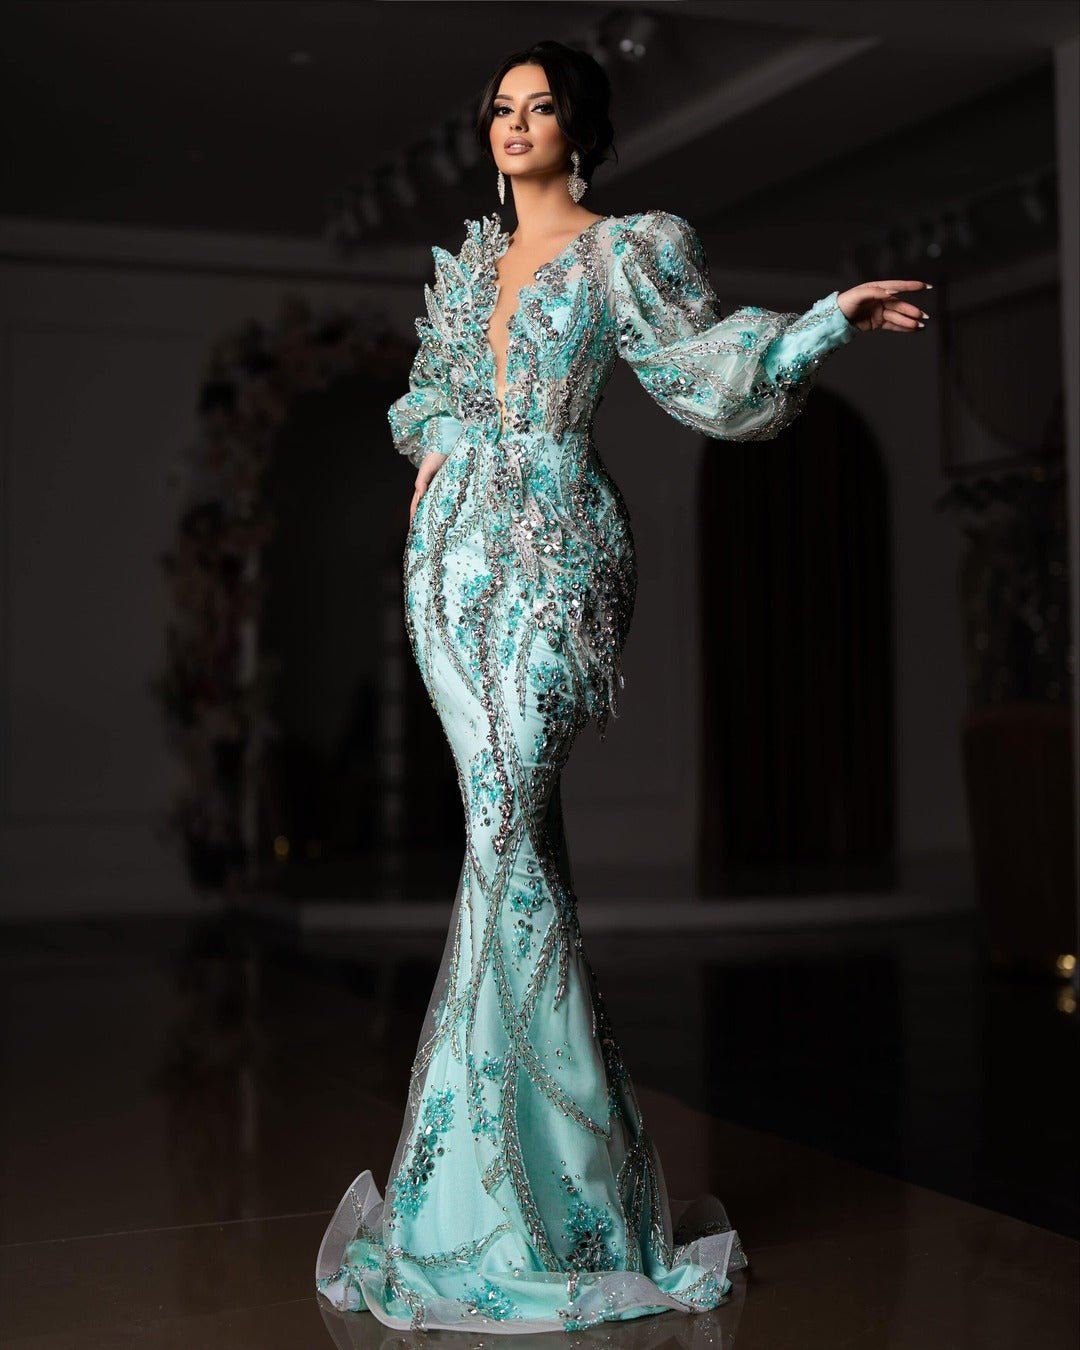 Zeus Strapless Sequin Gown B51D10L - RSVP Bridal & Formal Wear